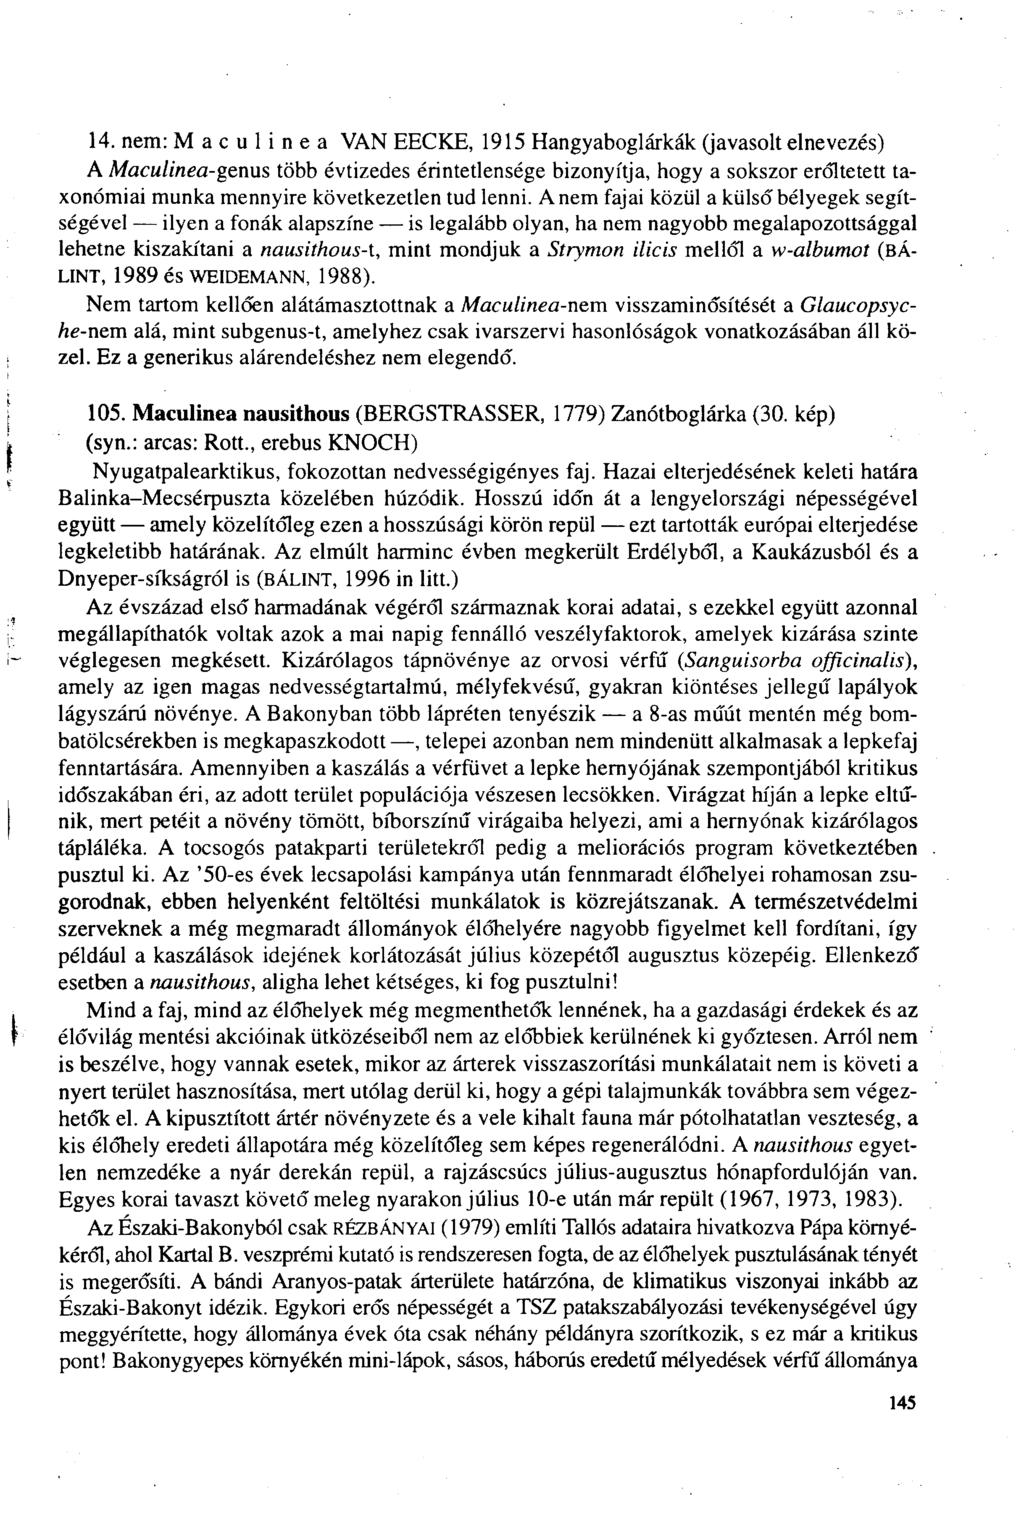 14. nem: Maeulinea VAN EECKE, 1915 Hangyaboglárkák (javasolt elnevezés) A Maculinea-genus több évtizedes érintetlensége bizonyítja, hogy a sokszor erőltetett taxonómiai munka mennyire következetlen